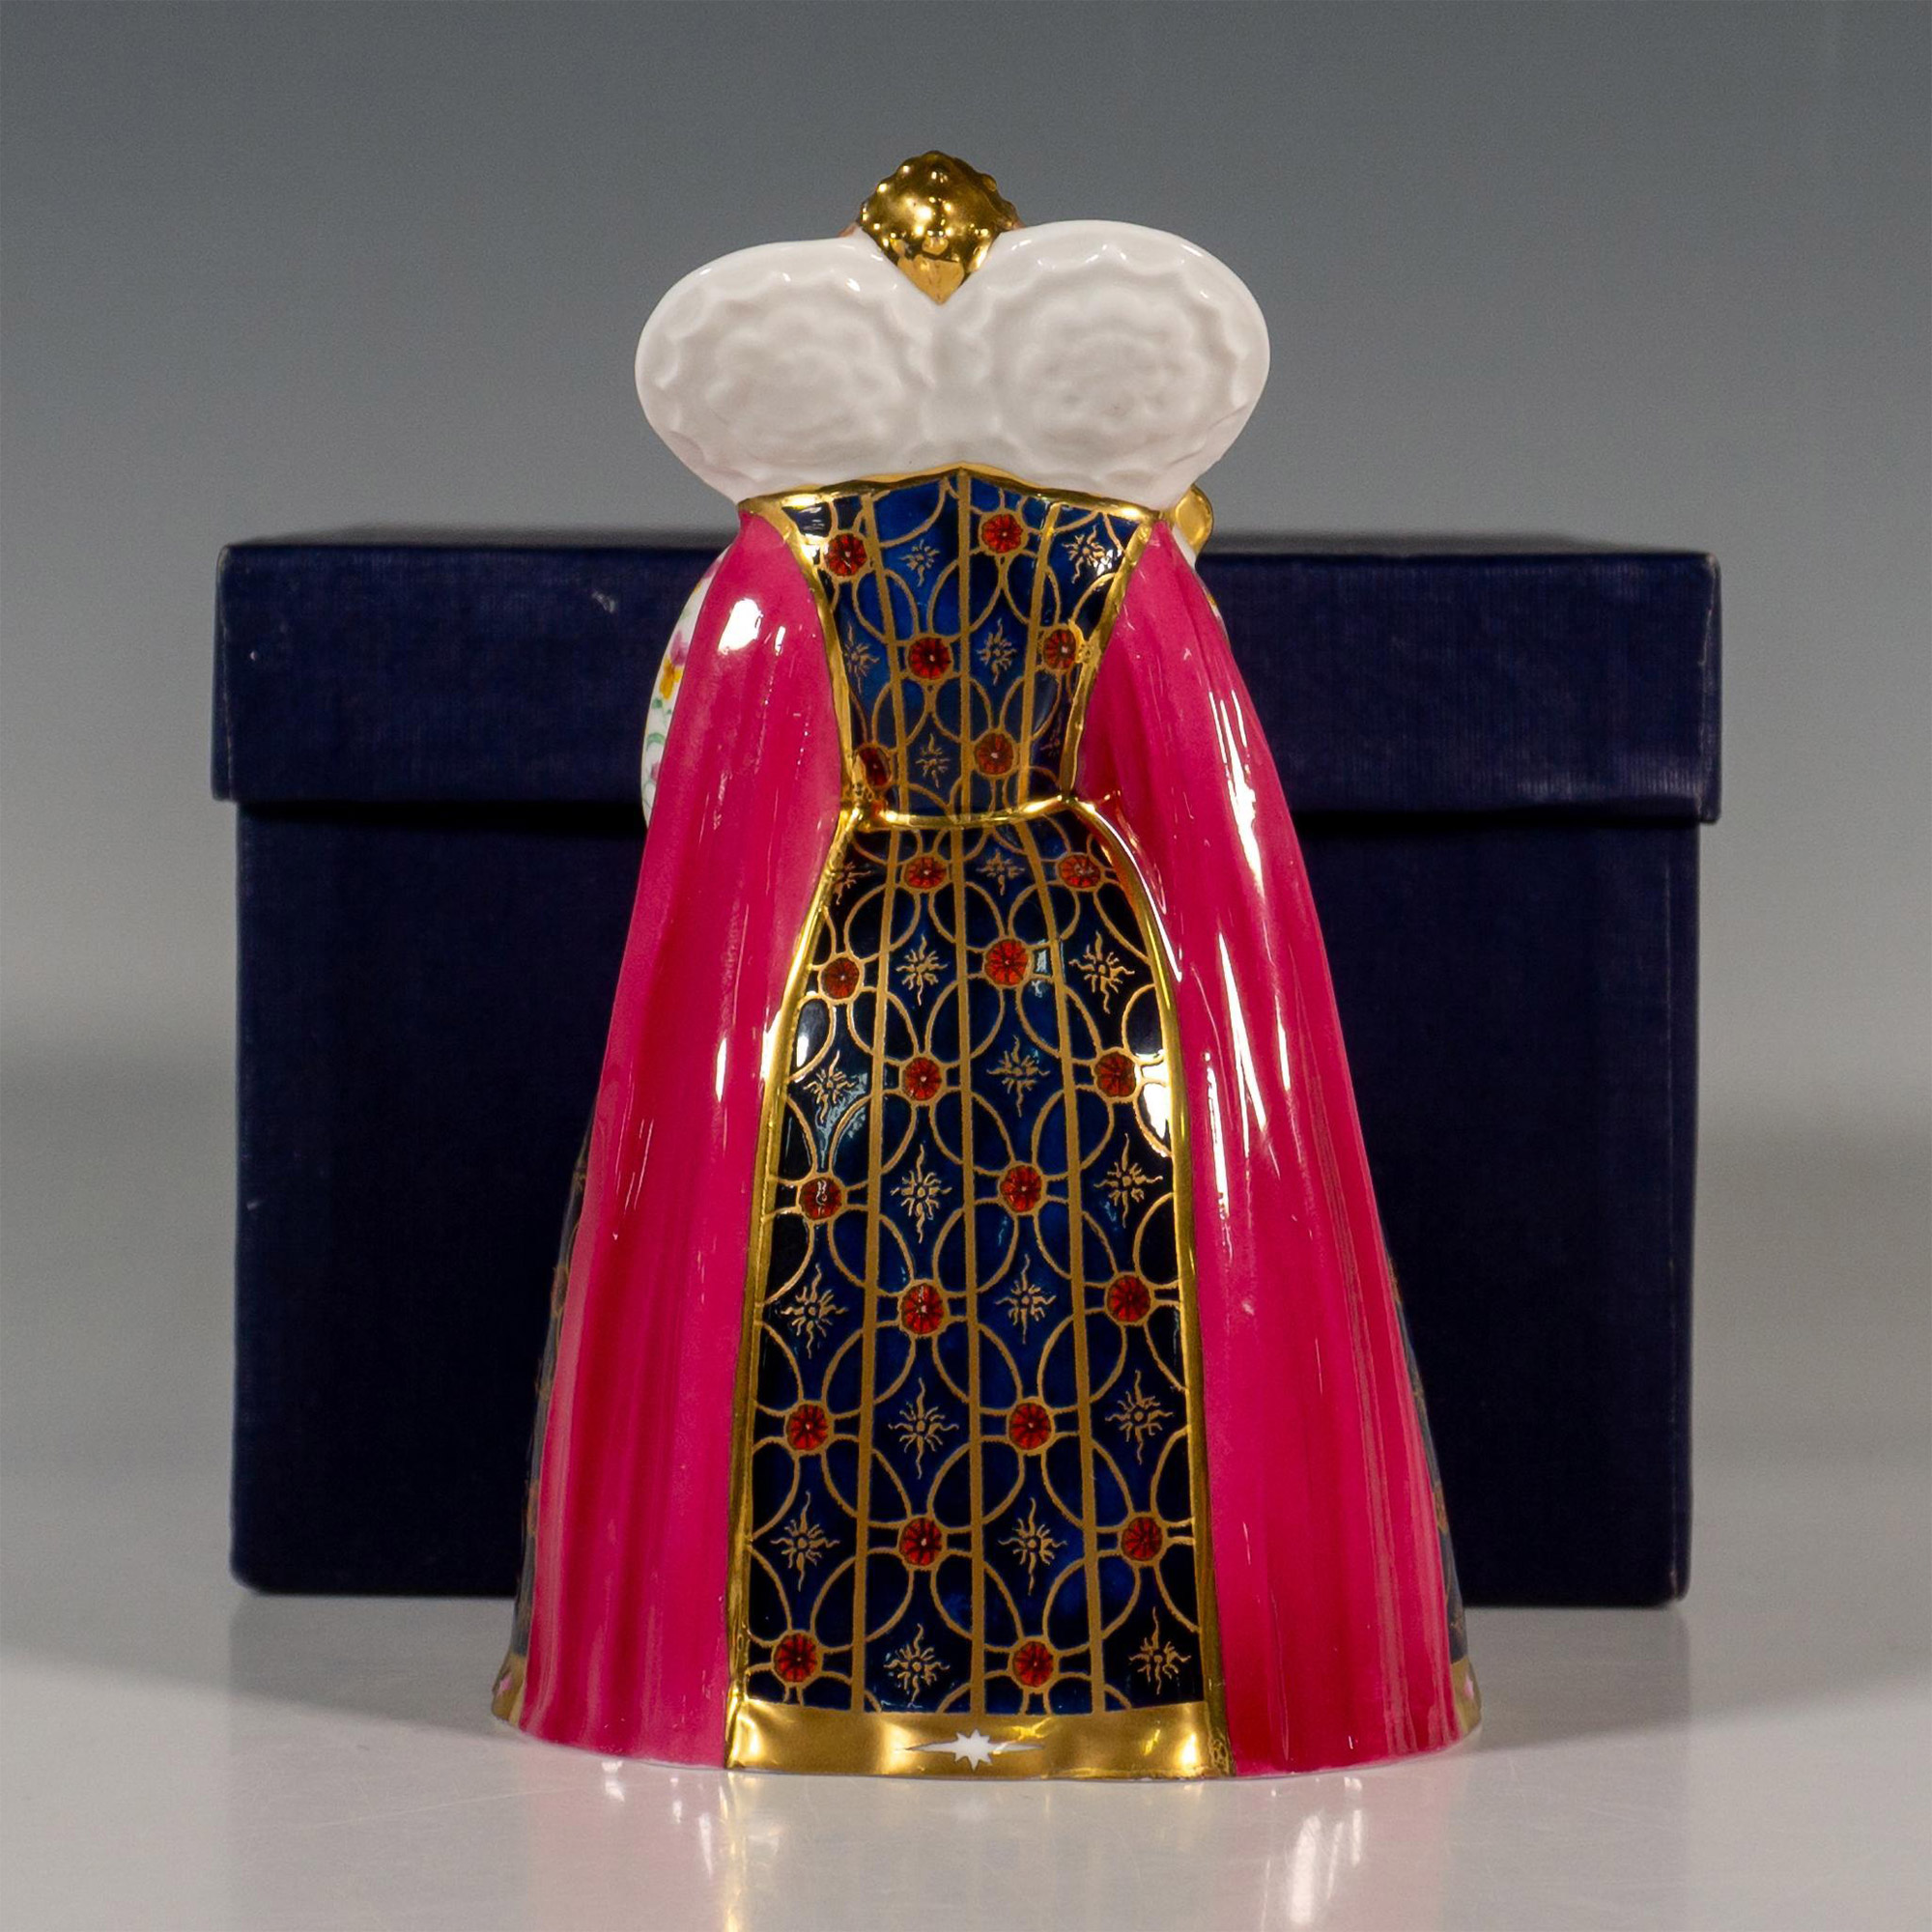 Royal Worcester Porcelain Candle Snuff, Queen Elizabeth I - Image 2 of 4